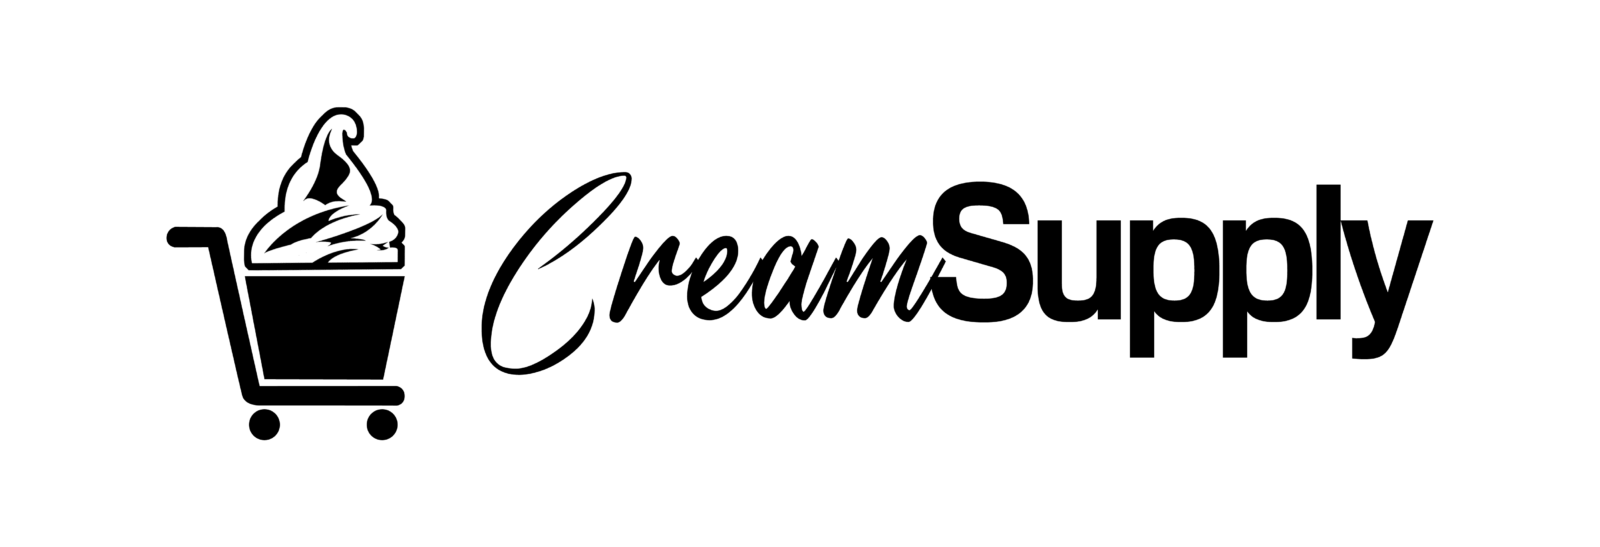 CreamSupply - Full Logo (transparent)